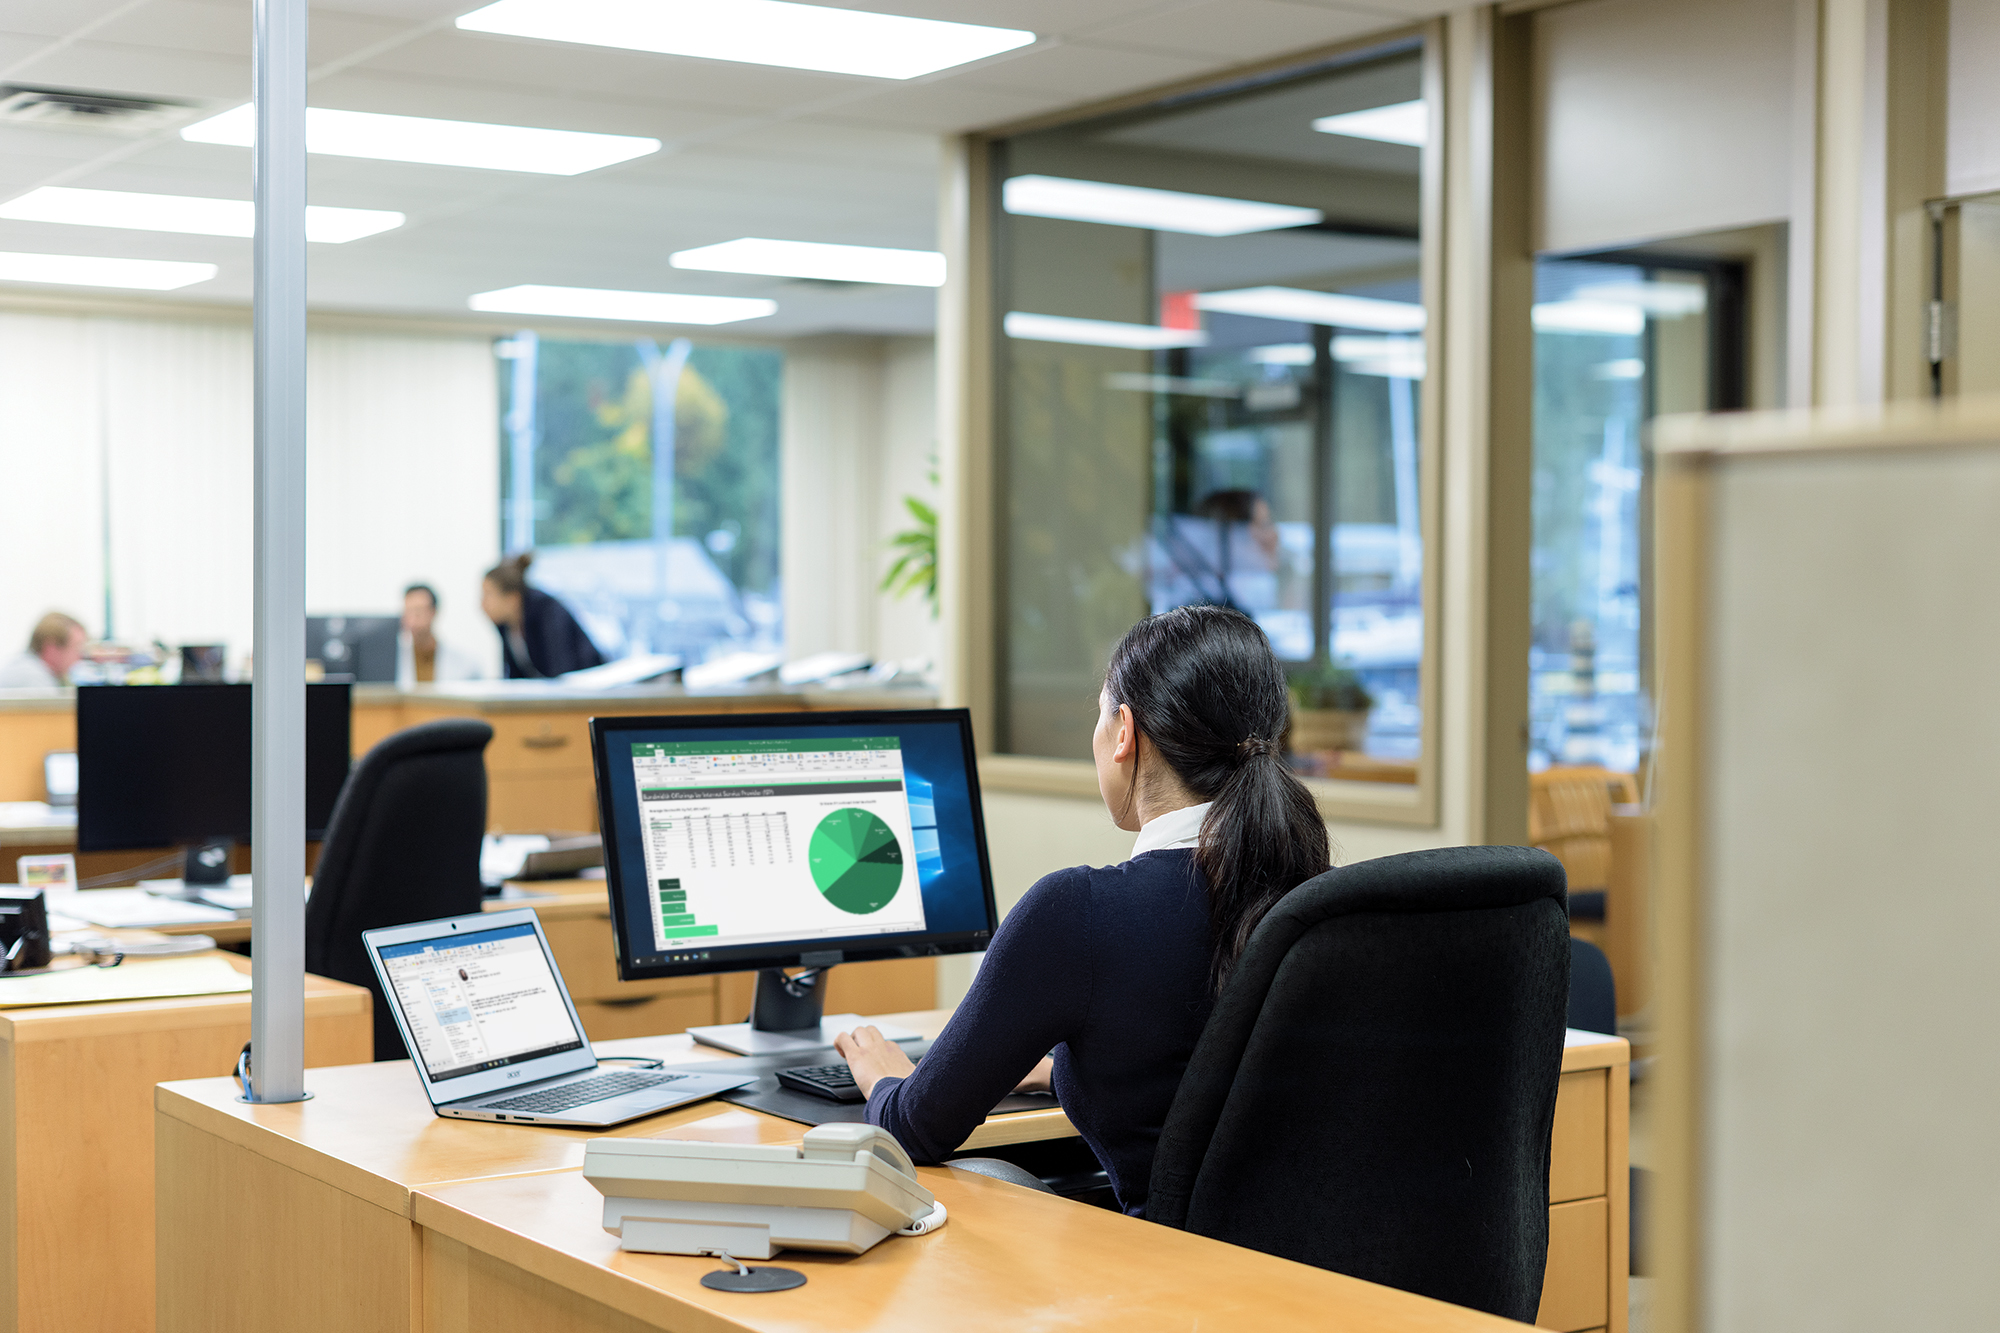 Ein Büroangestellter sieht ein Diagramm und Tabellen auf einem Bildschirm, während andere sich im Hintergrund treffen.